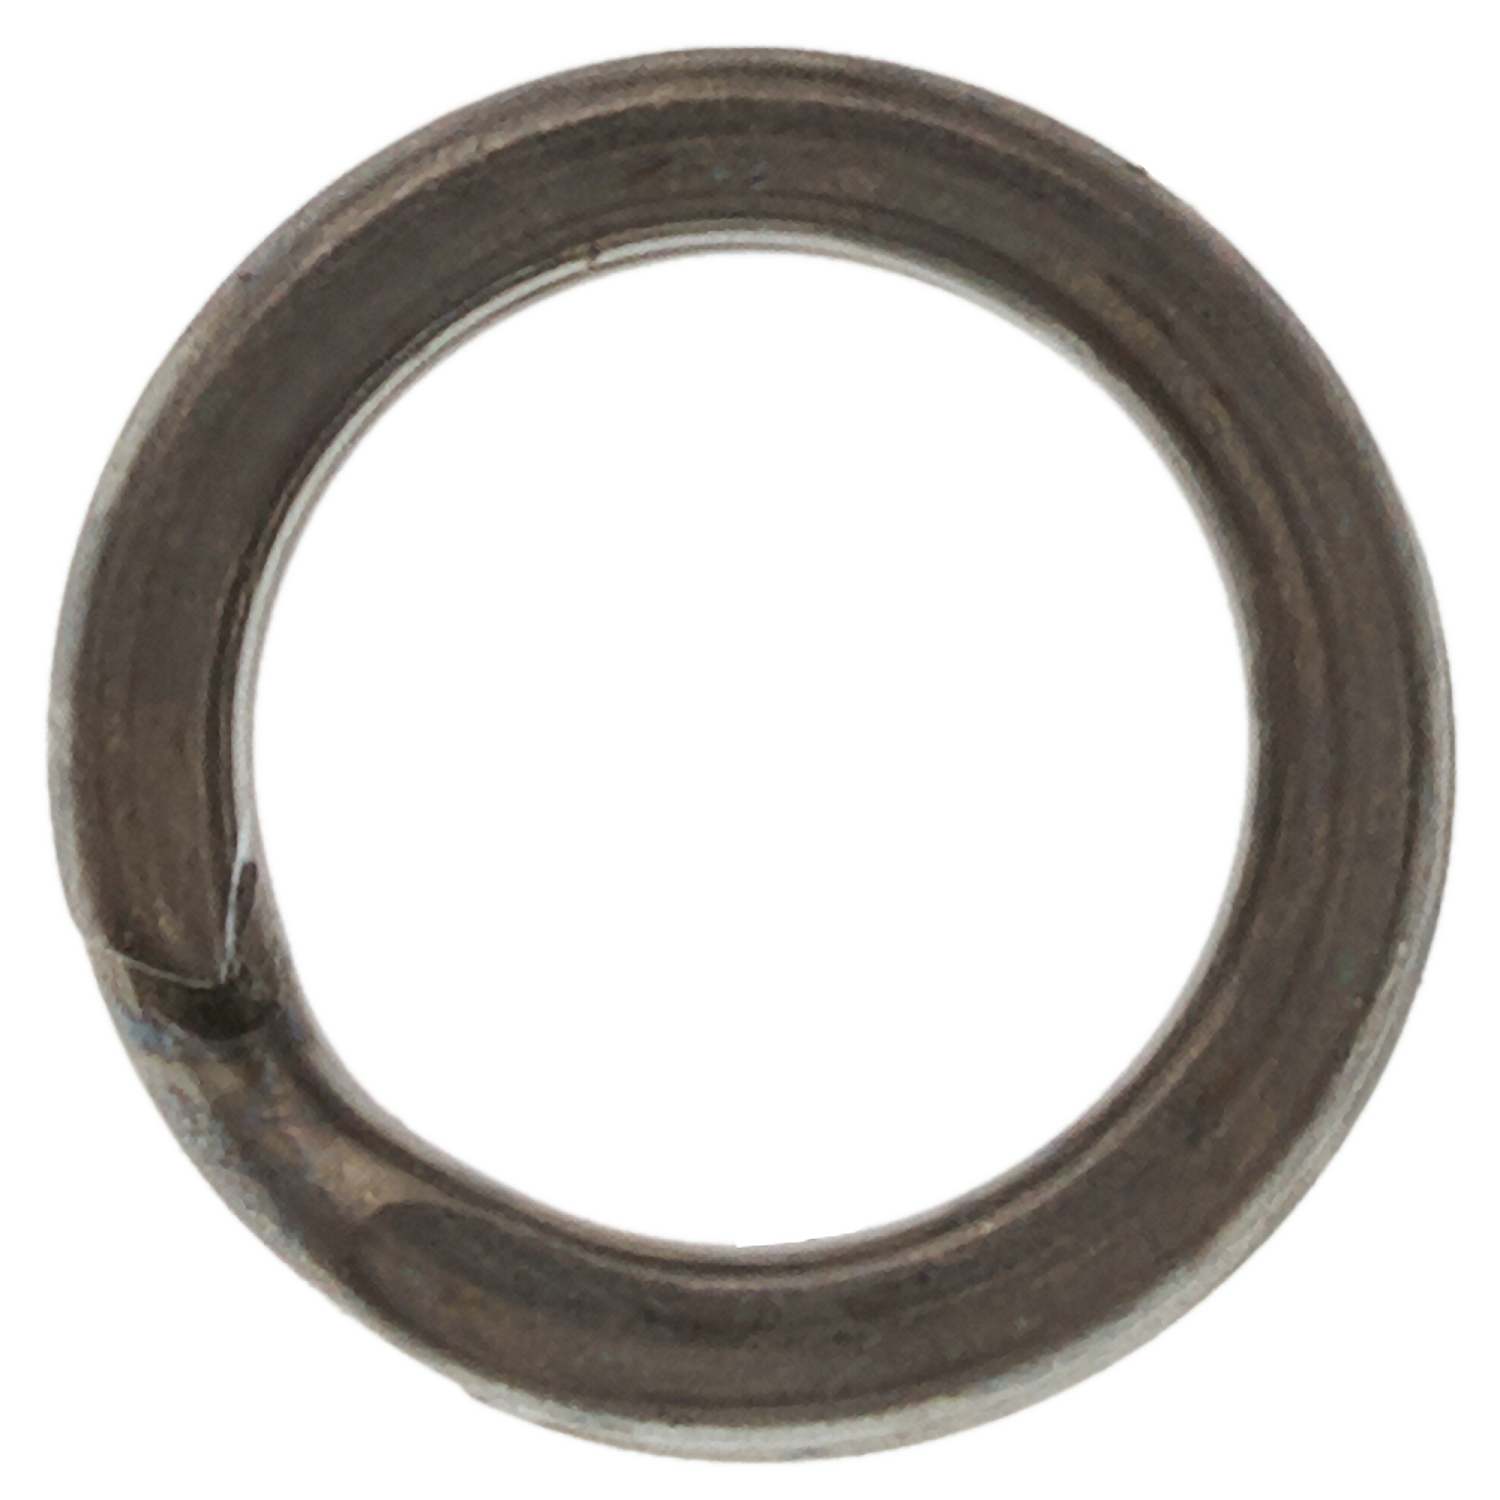 Кольцо заводное Hanzo SR 9010 плоское, усиленное #4 BLN